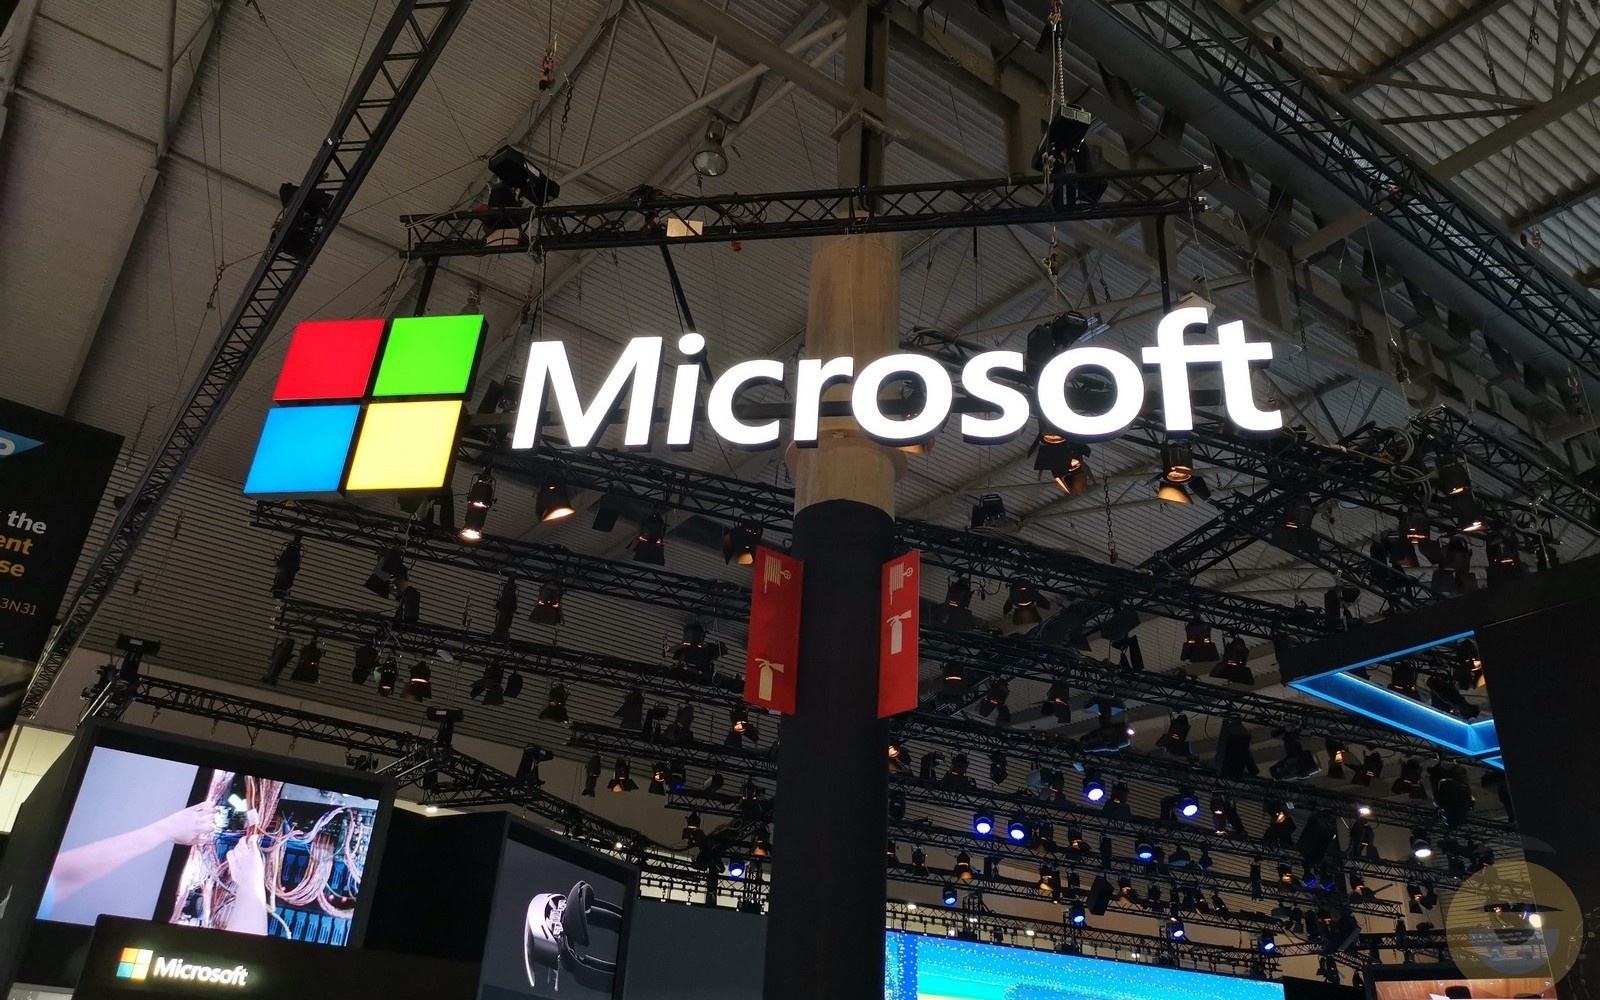 Η Microsoft θα παρουσιάσει λεπτομερώς το "μέλλον της εργασίας με την Τεχνητή Νοημοσύνη" στις 16 Μαρτίου